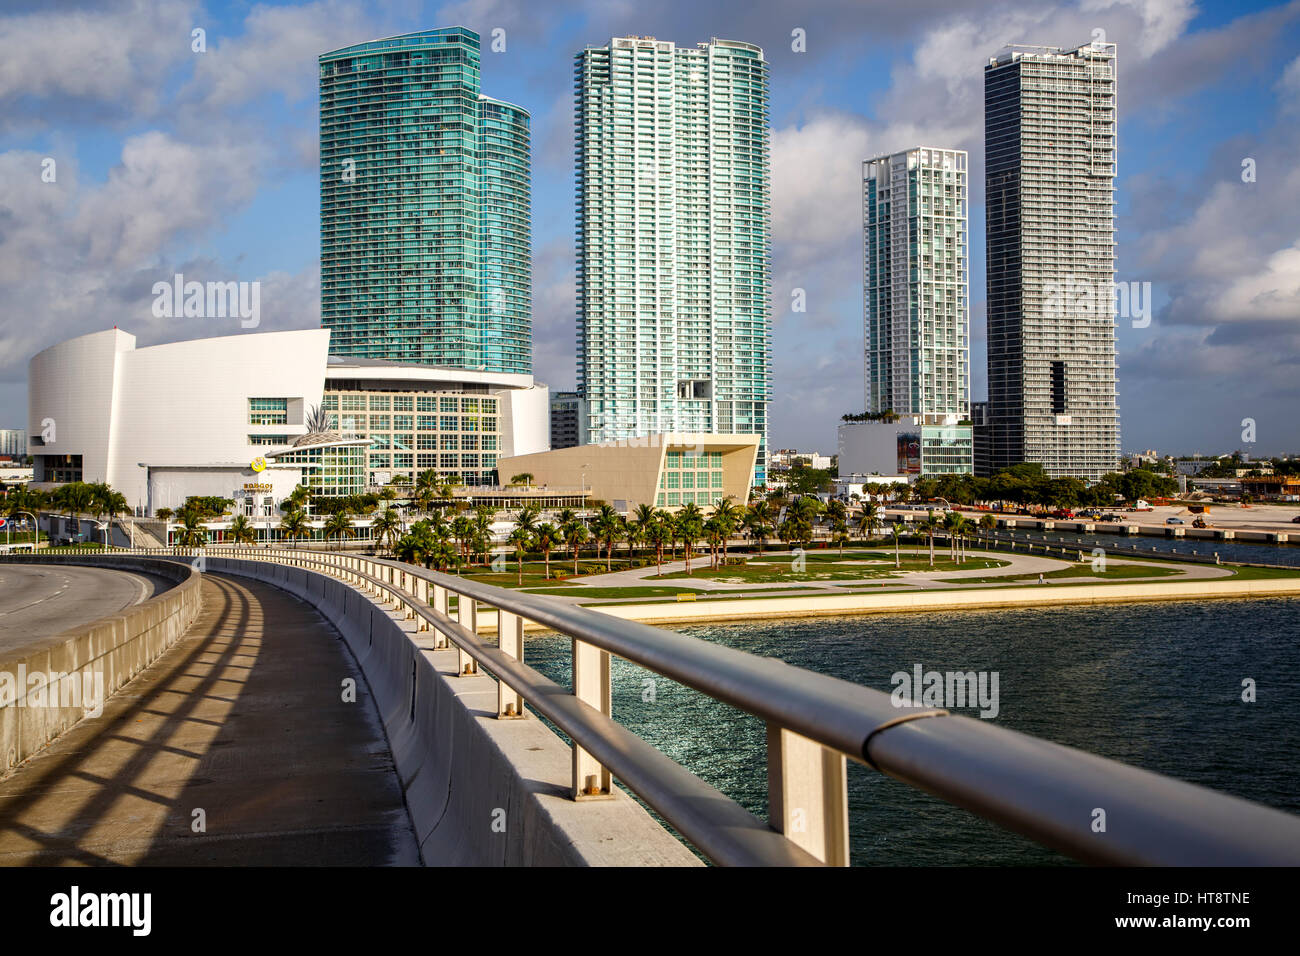 Port Blvd. Bridge, American Airlines Arena and skyscrapers, Miami, Florida Stock Photo